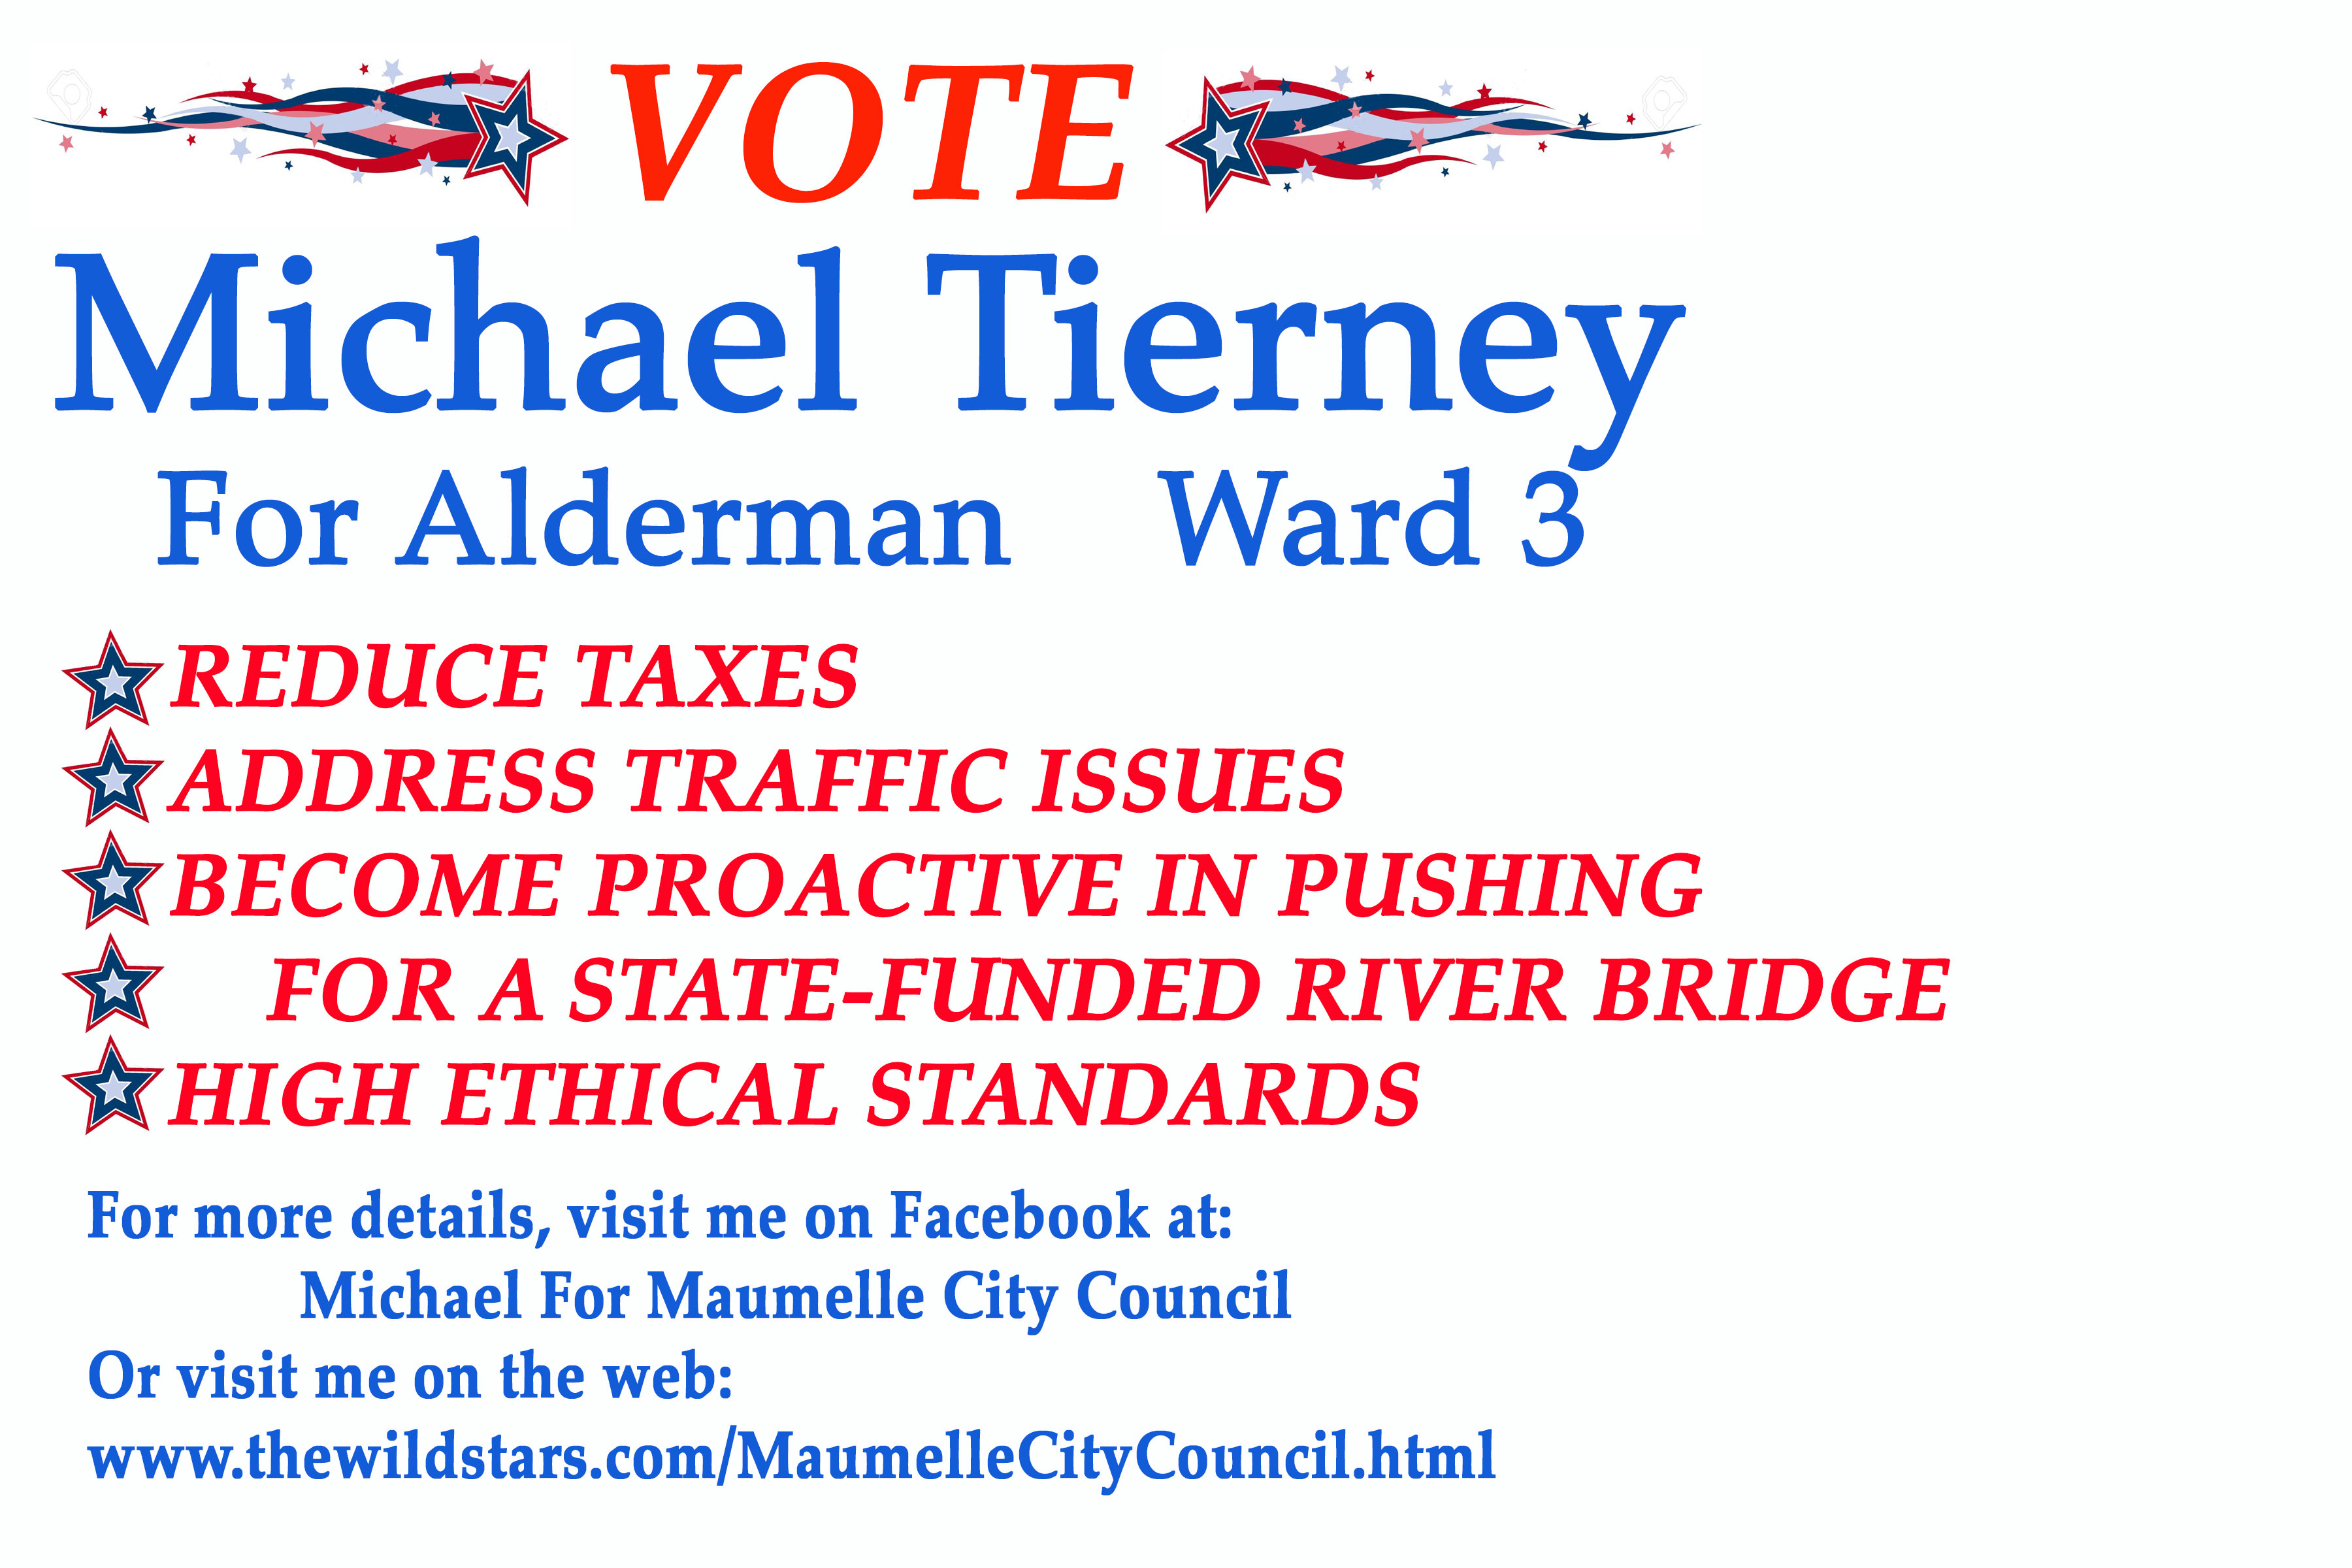 Michael for Maumelle City Council